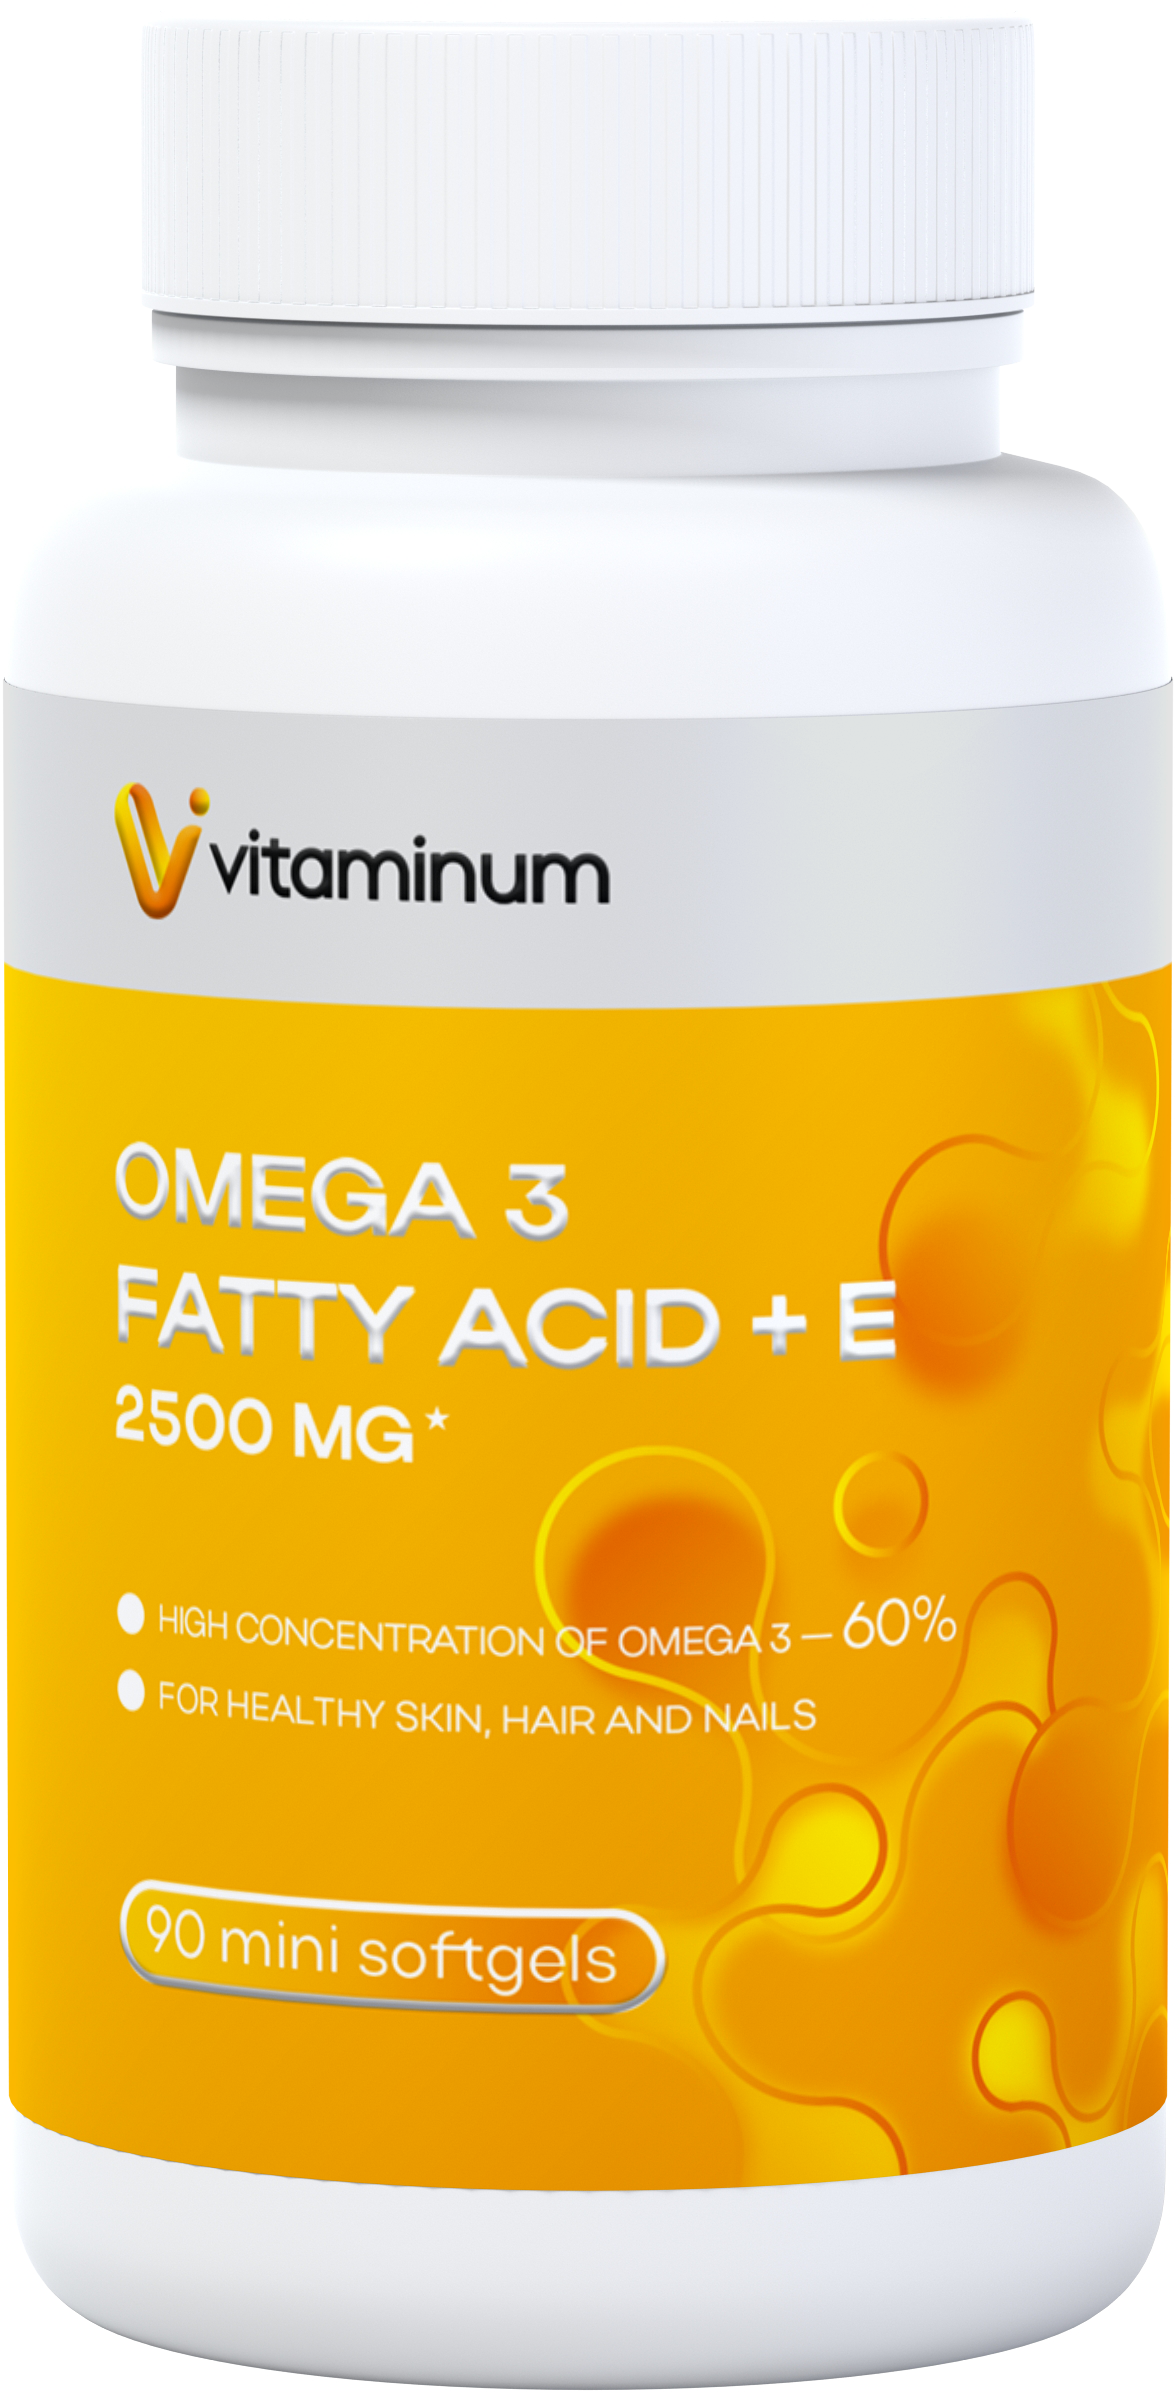  Vitaminum ОМЕГА 3 60% + витамин Е (2500 MG*) 90 капсул 700 мг   в Ярославле